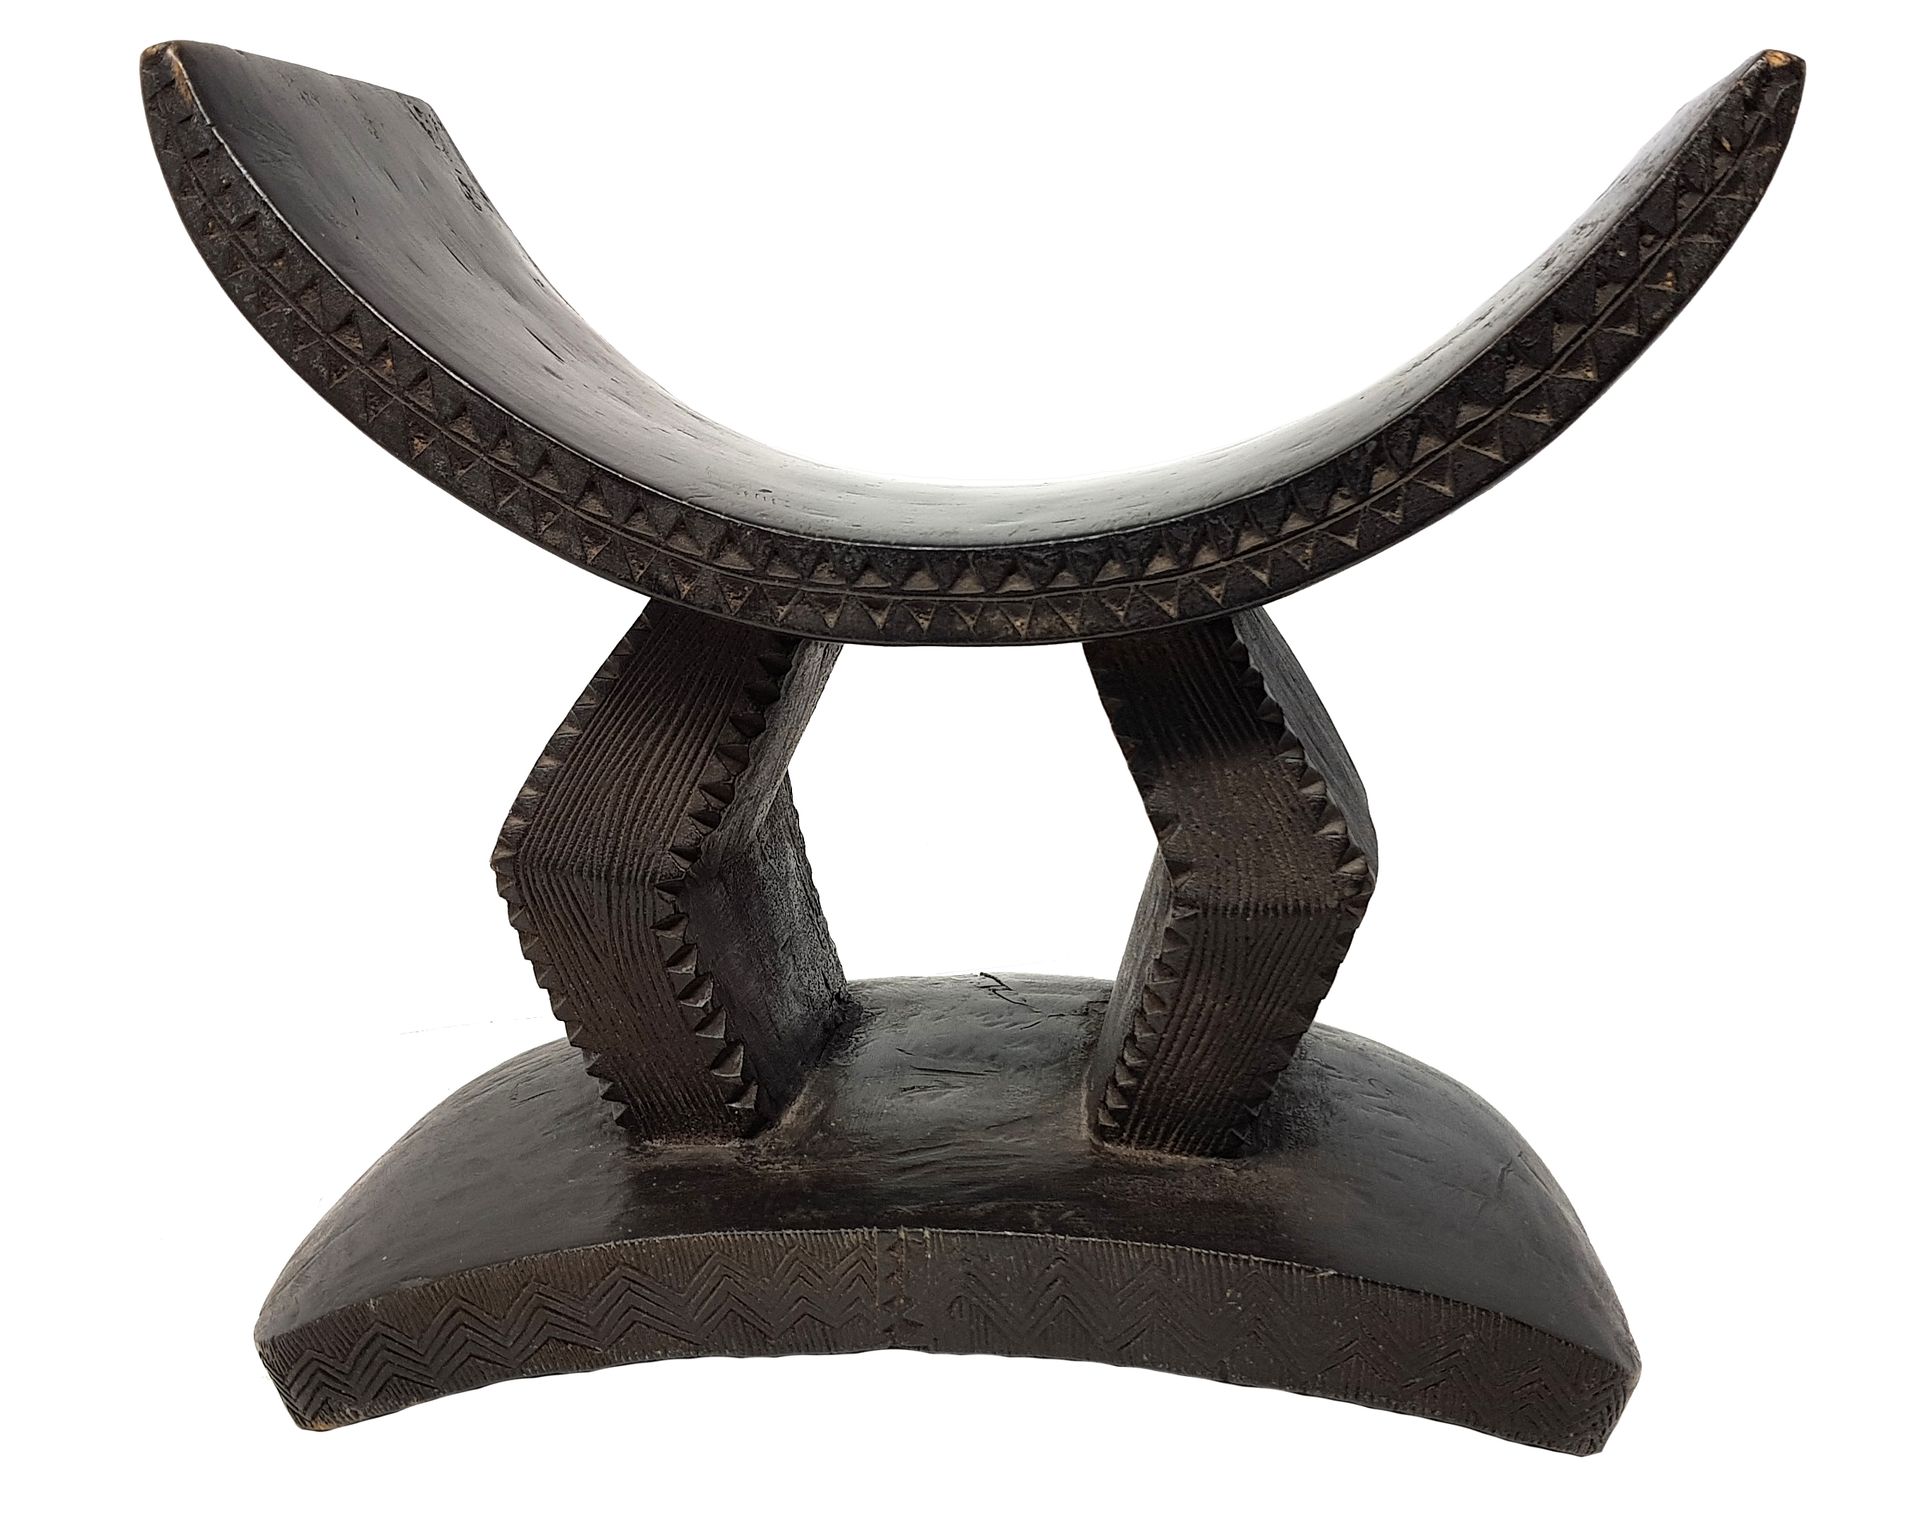 Appui-nuque BONI 
拱形，搁置在两个菱形的腿上，形状上有一个美丽的平衡。边缘刻有美丽的锯齿状和条纹状的装饰。带有深棕色铜锈的木头，29 x 23&hellip;